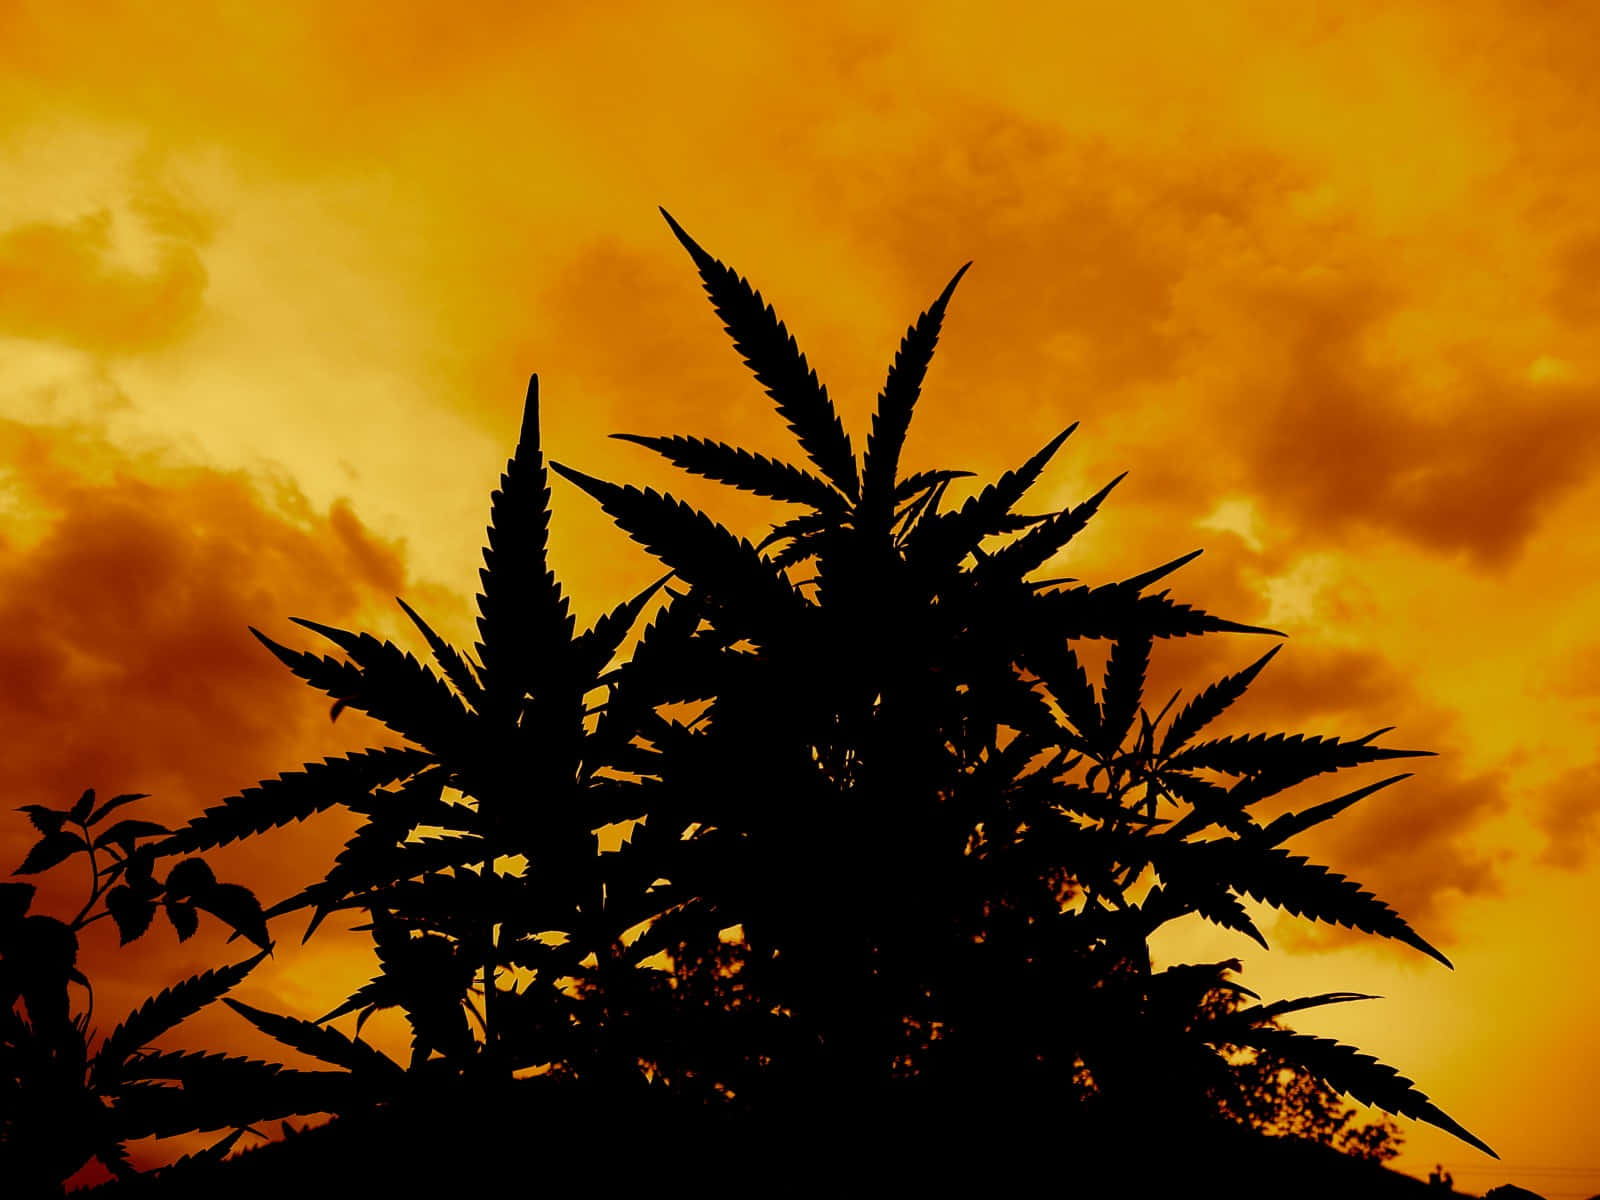 Unahoja De Cannabis Vibrante Y Colorida Sobre Un Fondo Arcoíris